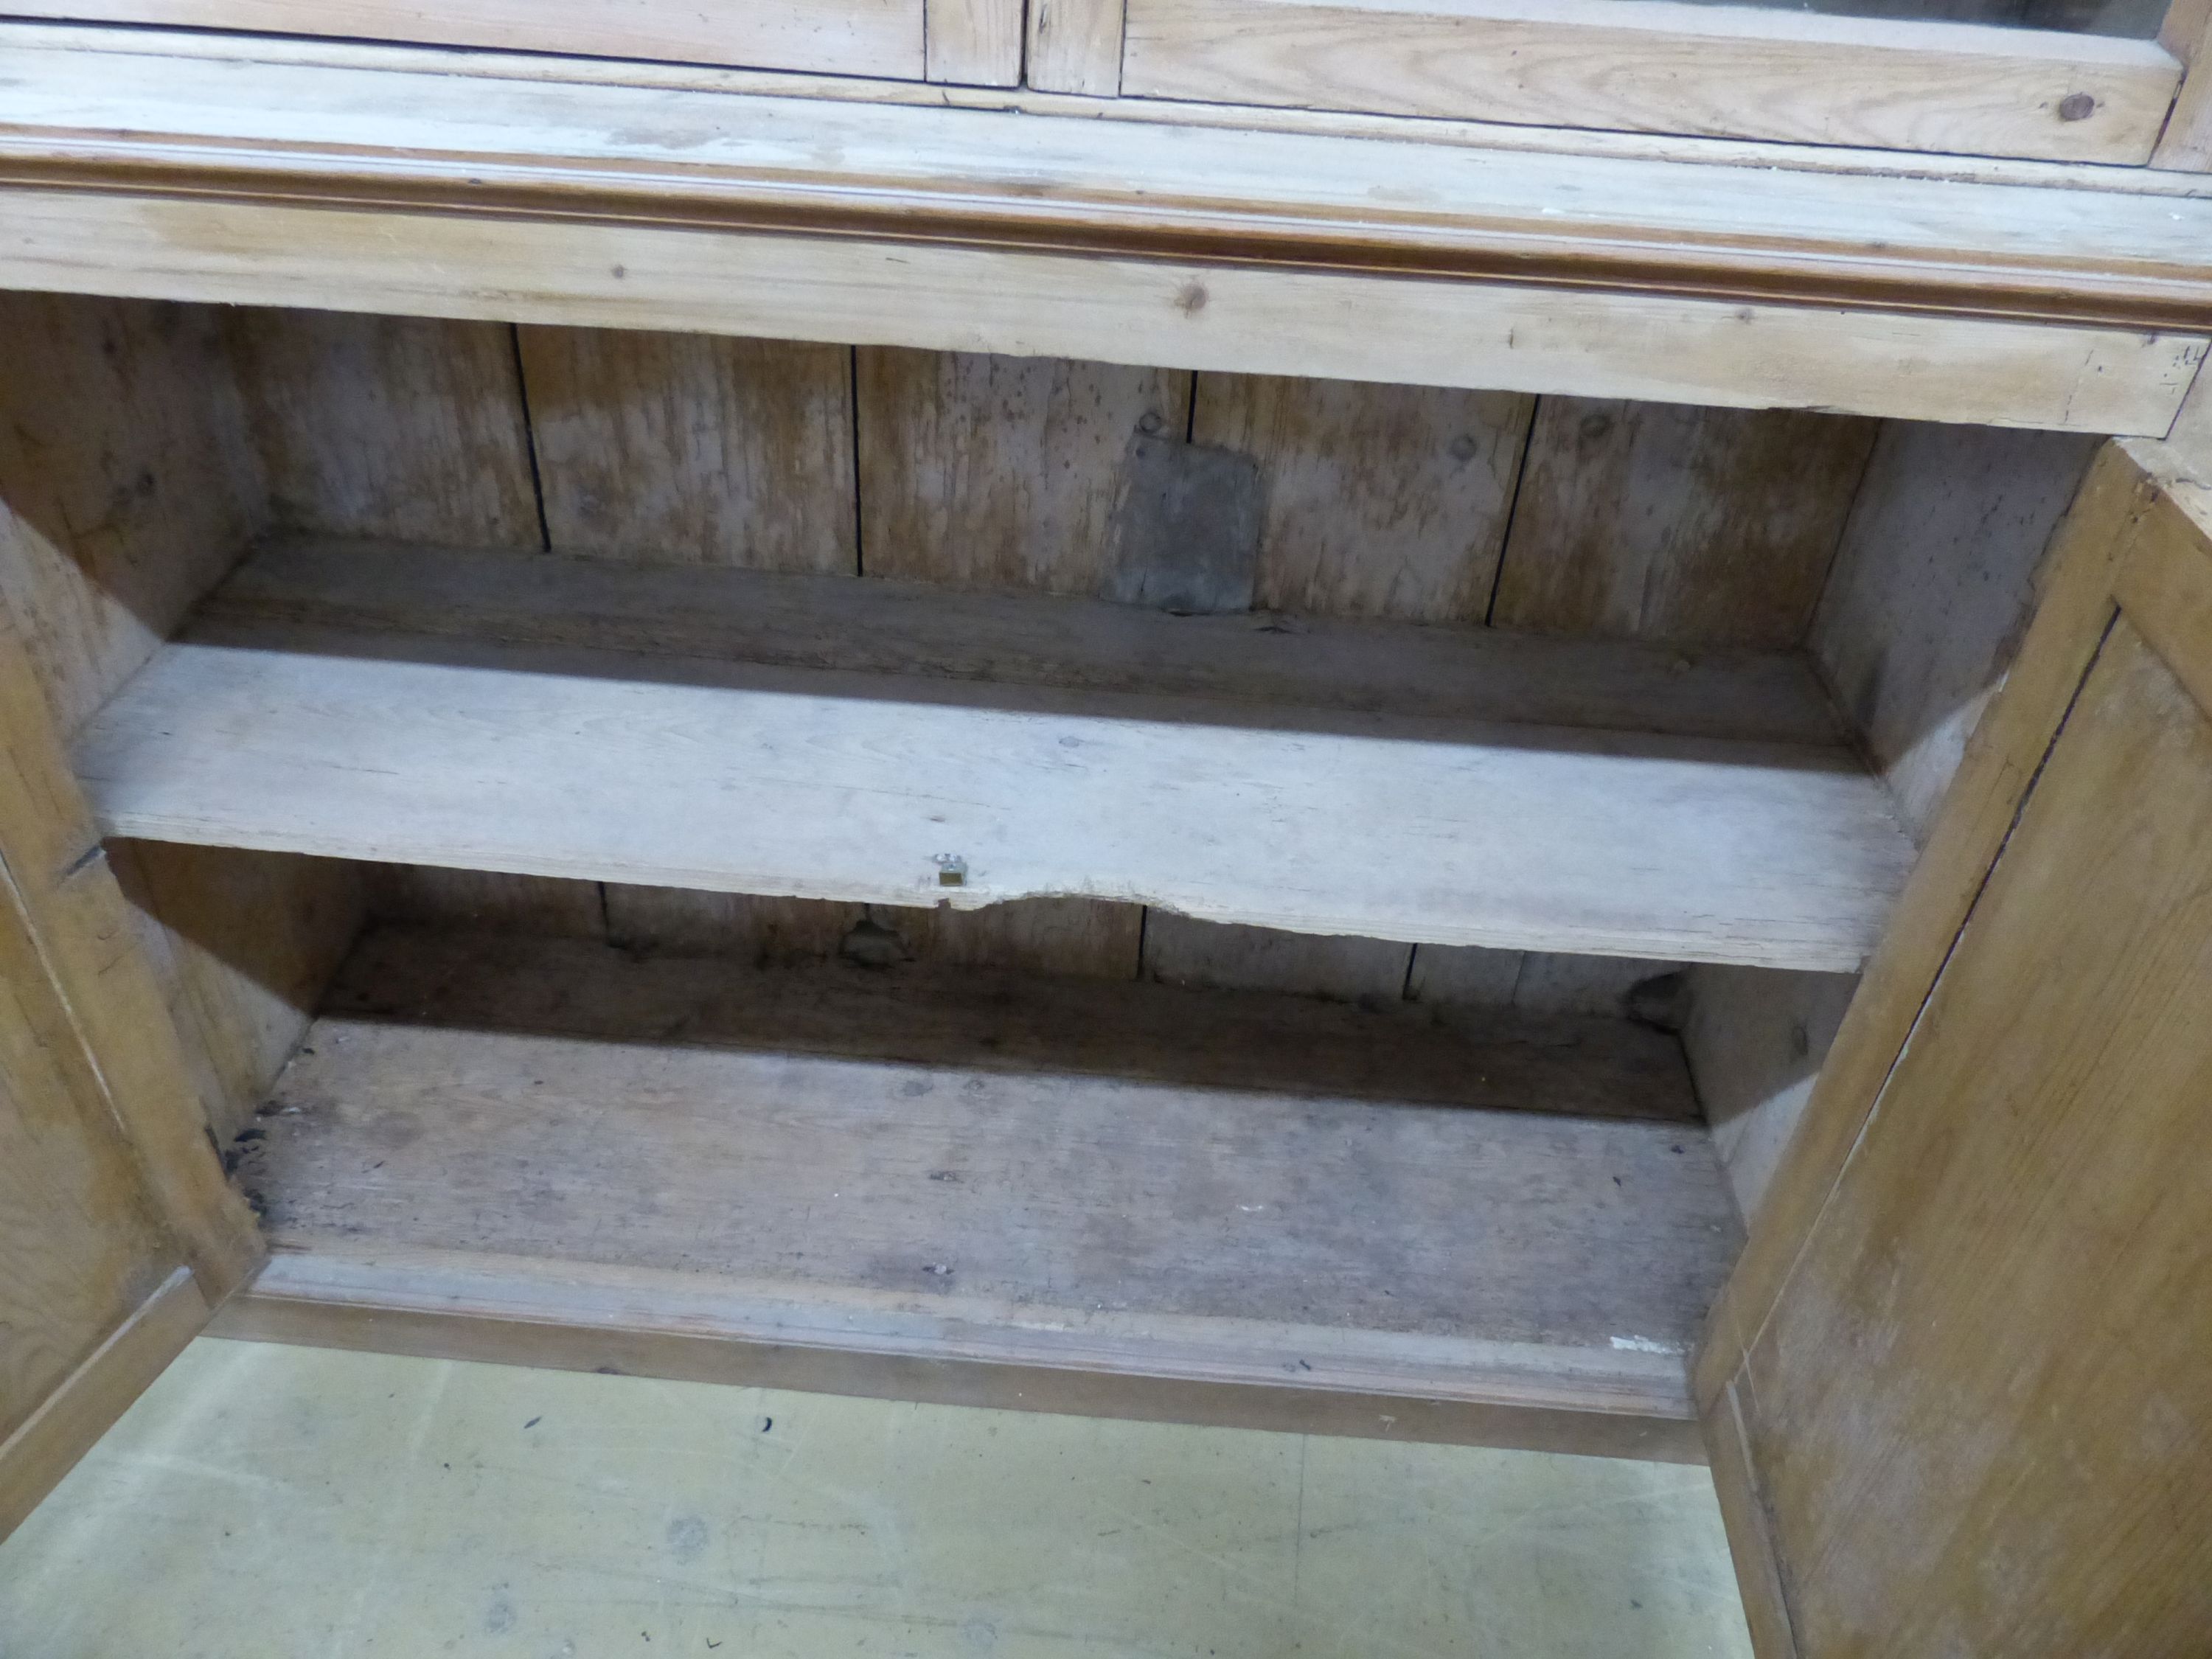 A Victorian pine kitchen cabinet, width 117cm, height 184cm